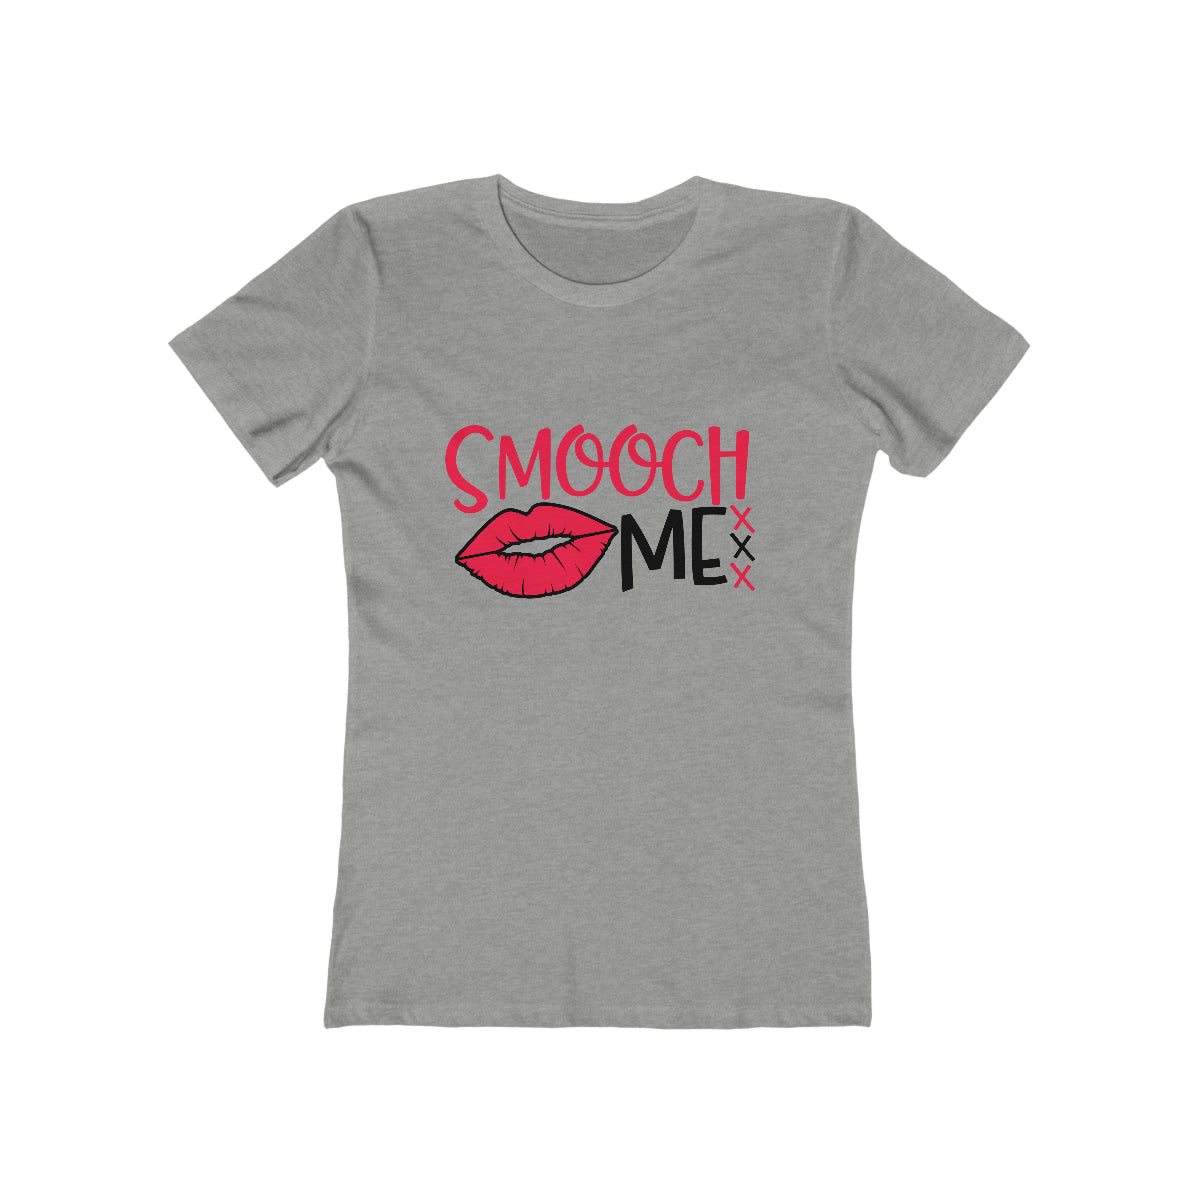 Smooch Me - Women's T-shirt